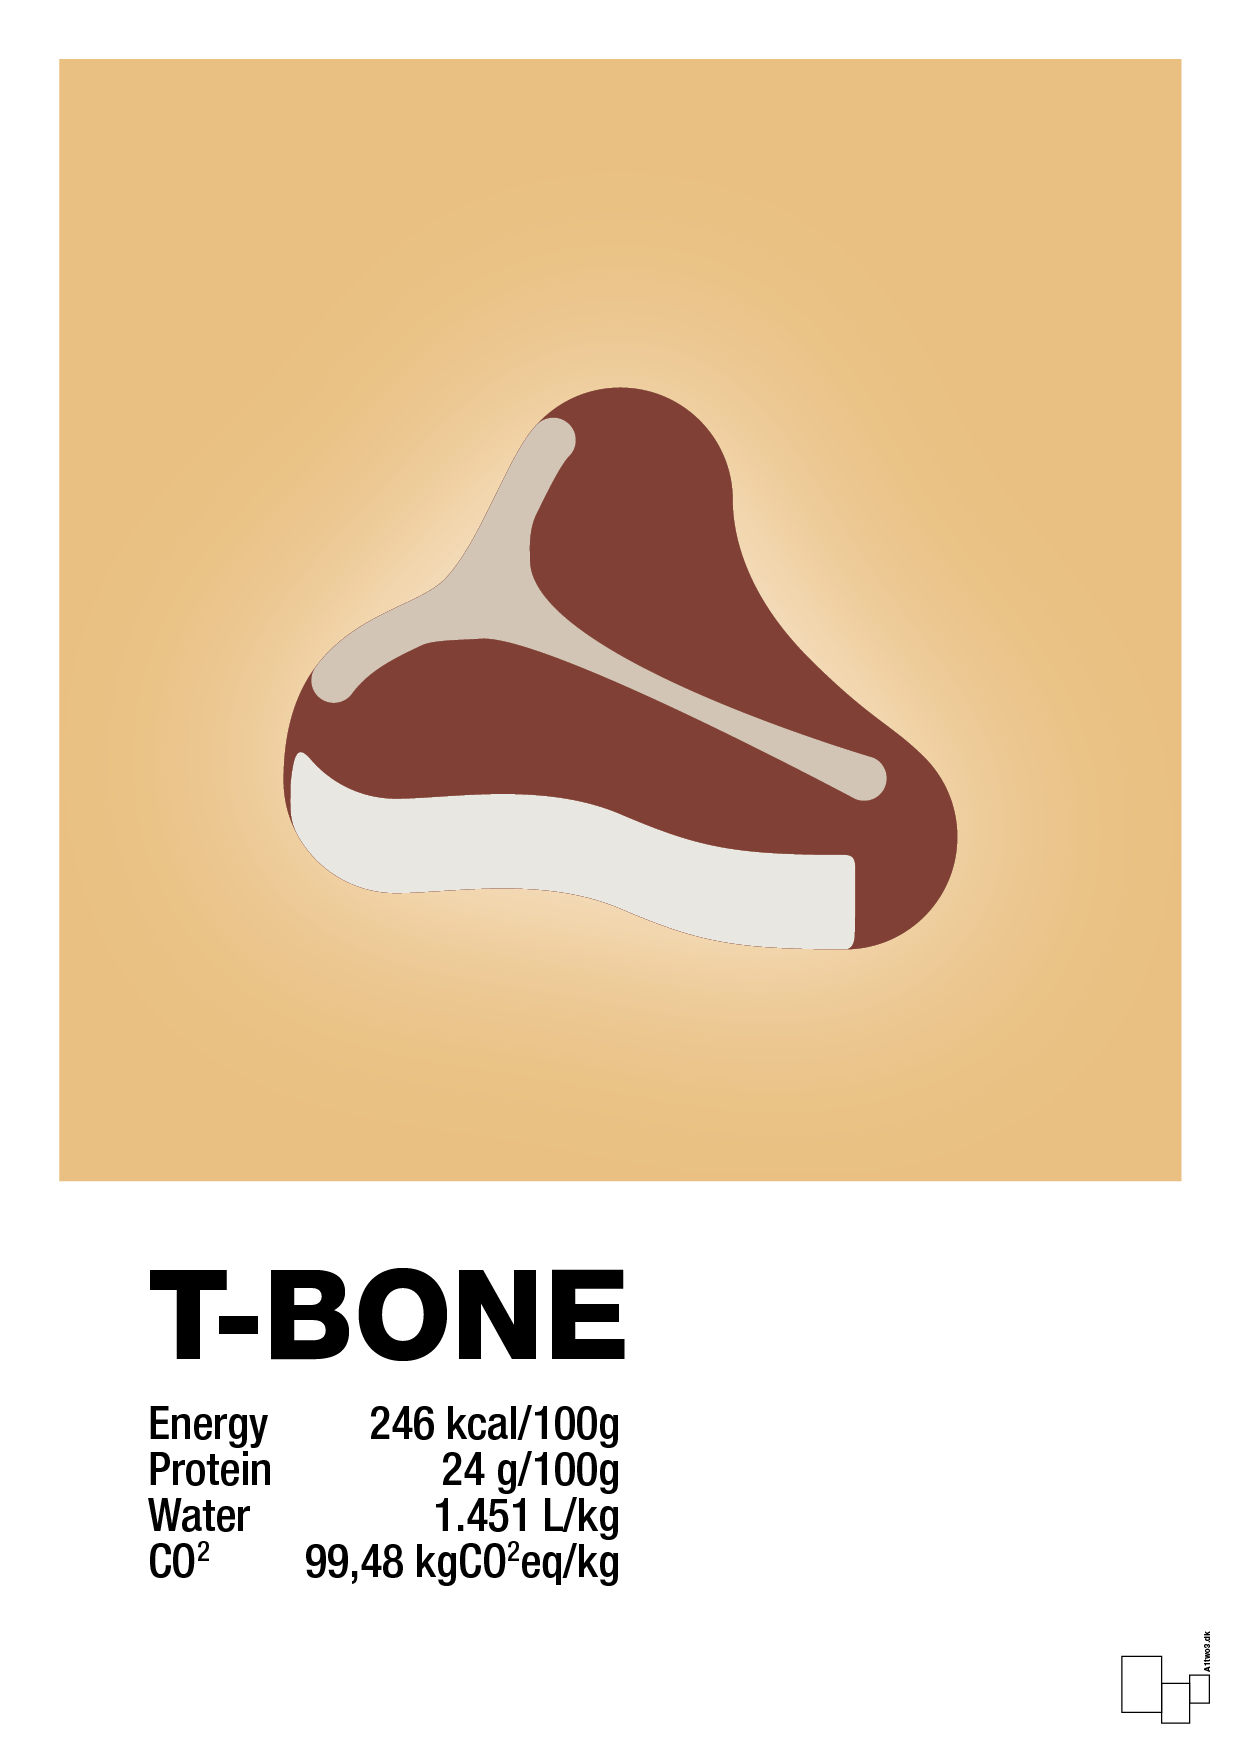 t-bone nutrition og miljø - Plakat med Mad & Drikke i Charismatic